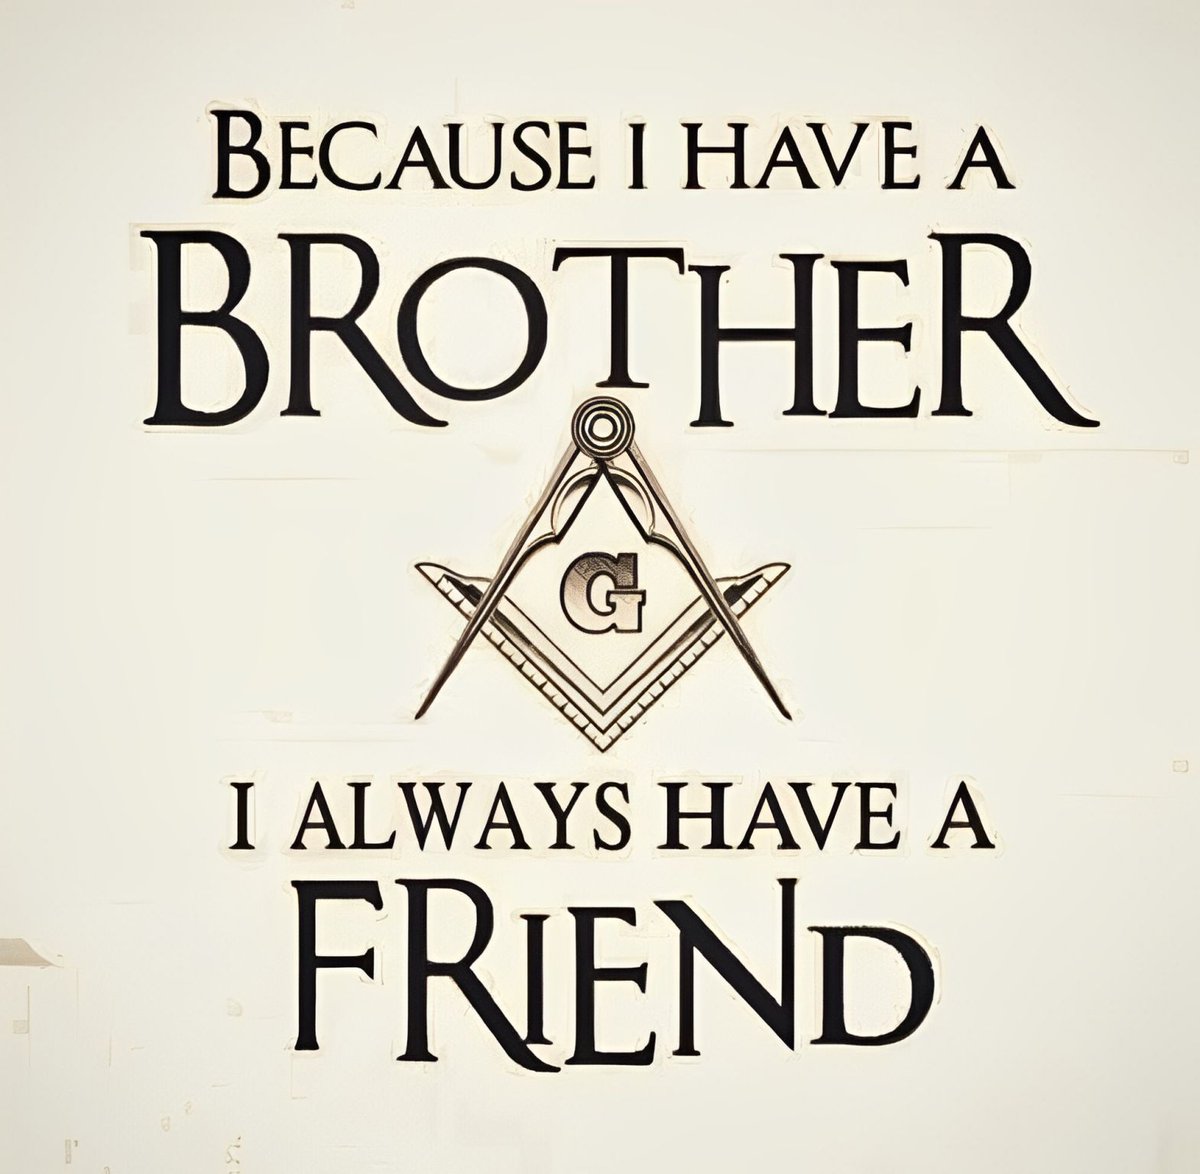 Because I have a Brother...
___
#Freemasons #Freemasonry #Lodge #Masonic #Charity #masonicknowledge #masoniclife #bluelodge #2B1ASK1 #masonry #freemason #masons #freemasonsofamerica #freemasonshall #freemasonslodge #squareandcompass #masoniclodge #mastermason #Brotherhood